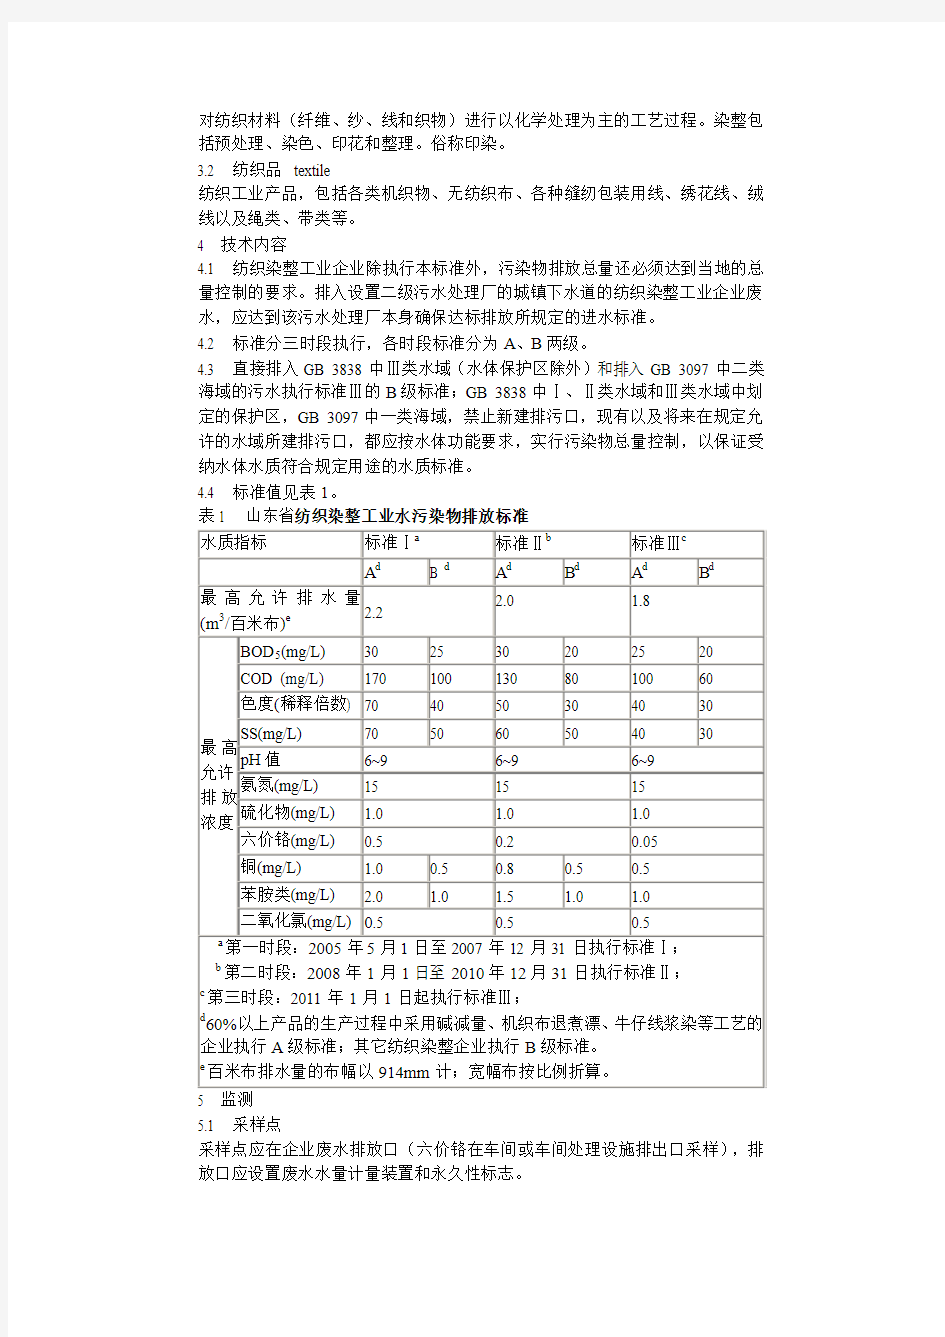 山东省纺织染整工业水污染物排放标准(DB37 533-2005)